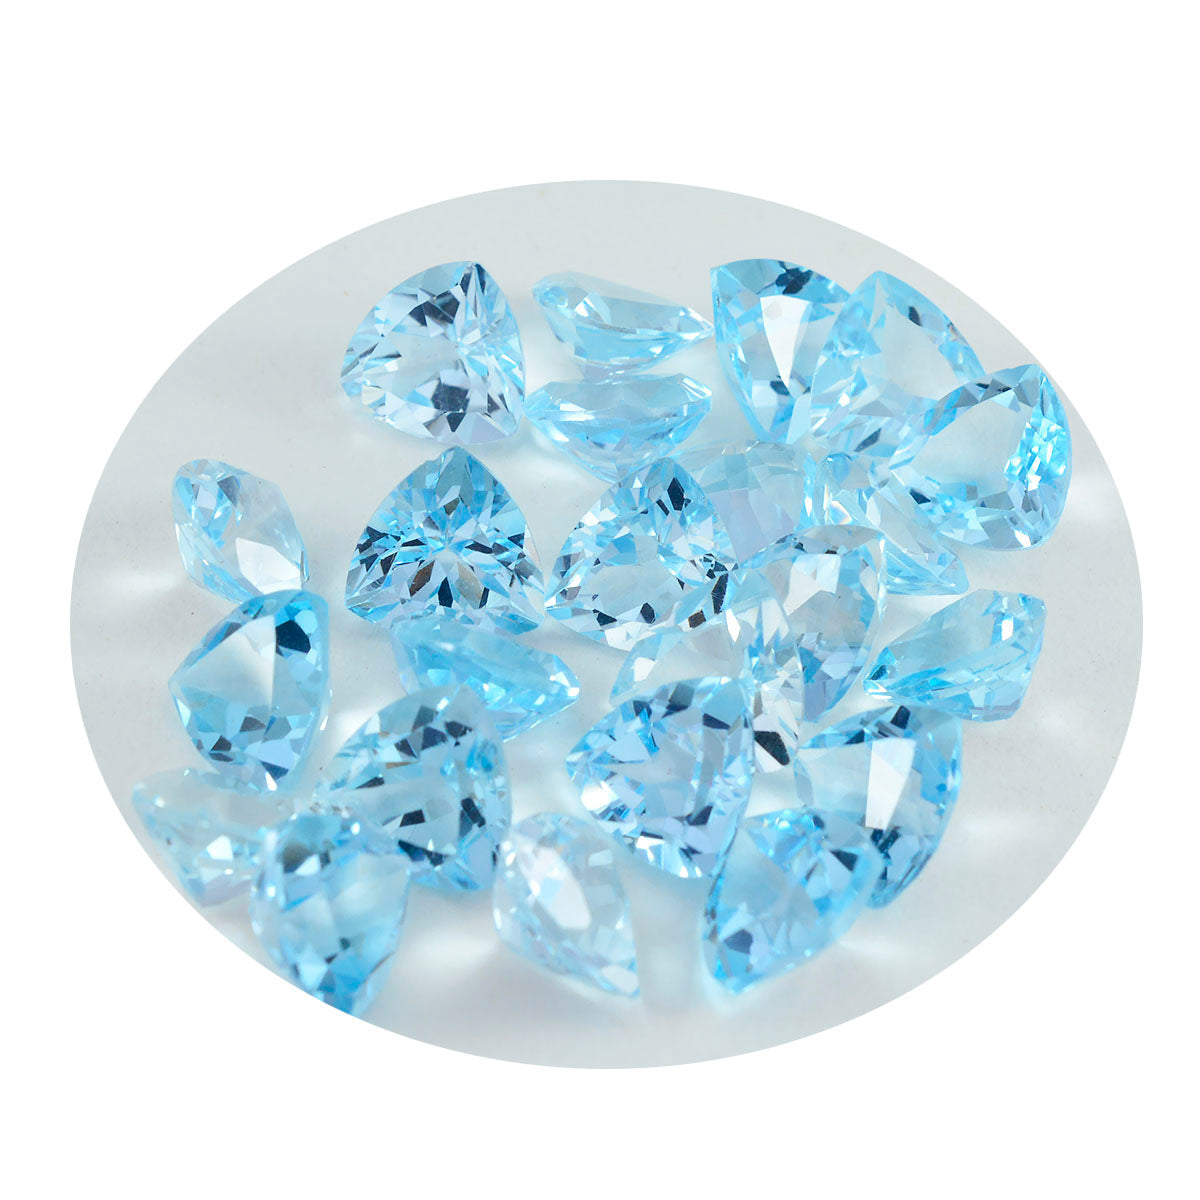 riyogems 1 шт. натуральный синий топаз ограненный 6x6 мм форма триллиона прекрасное качество свободный драгоценный камень